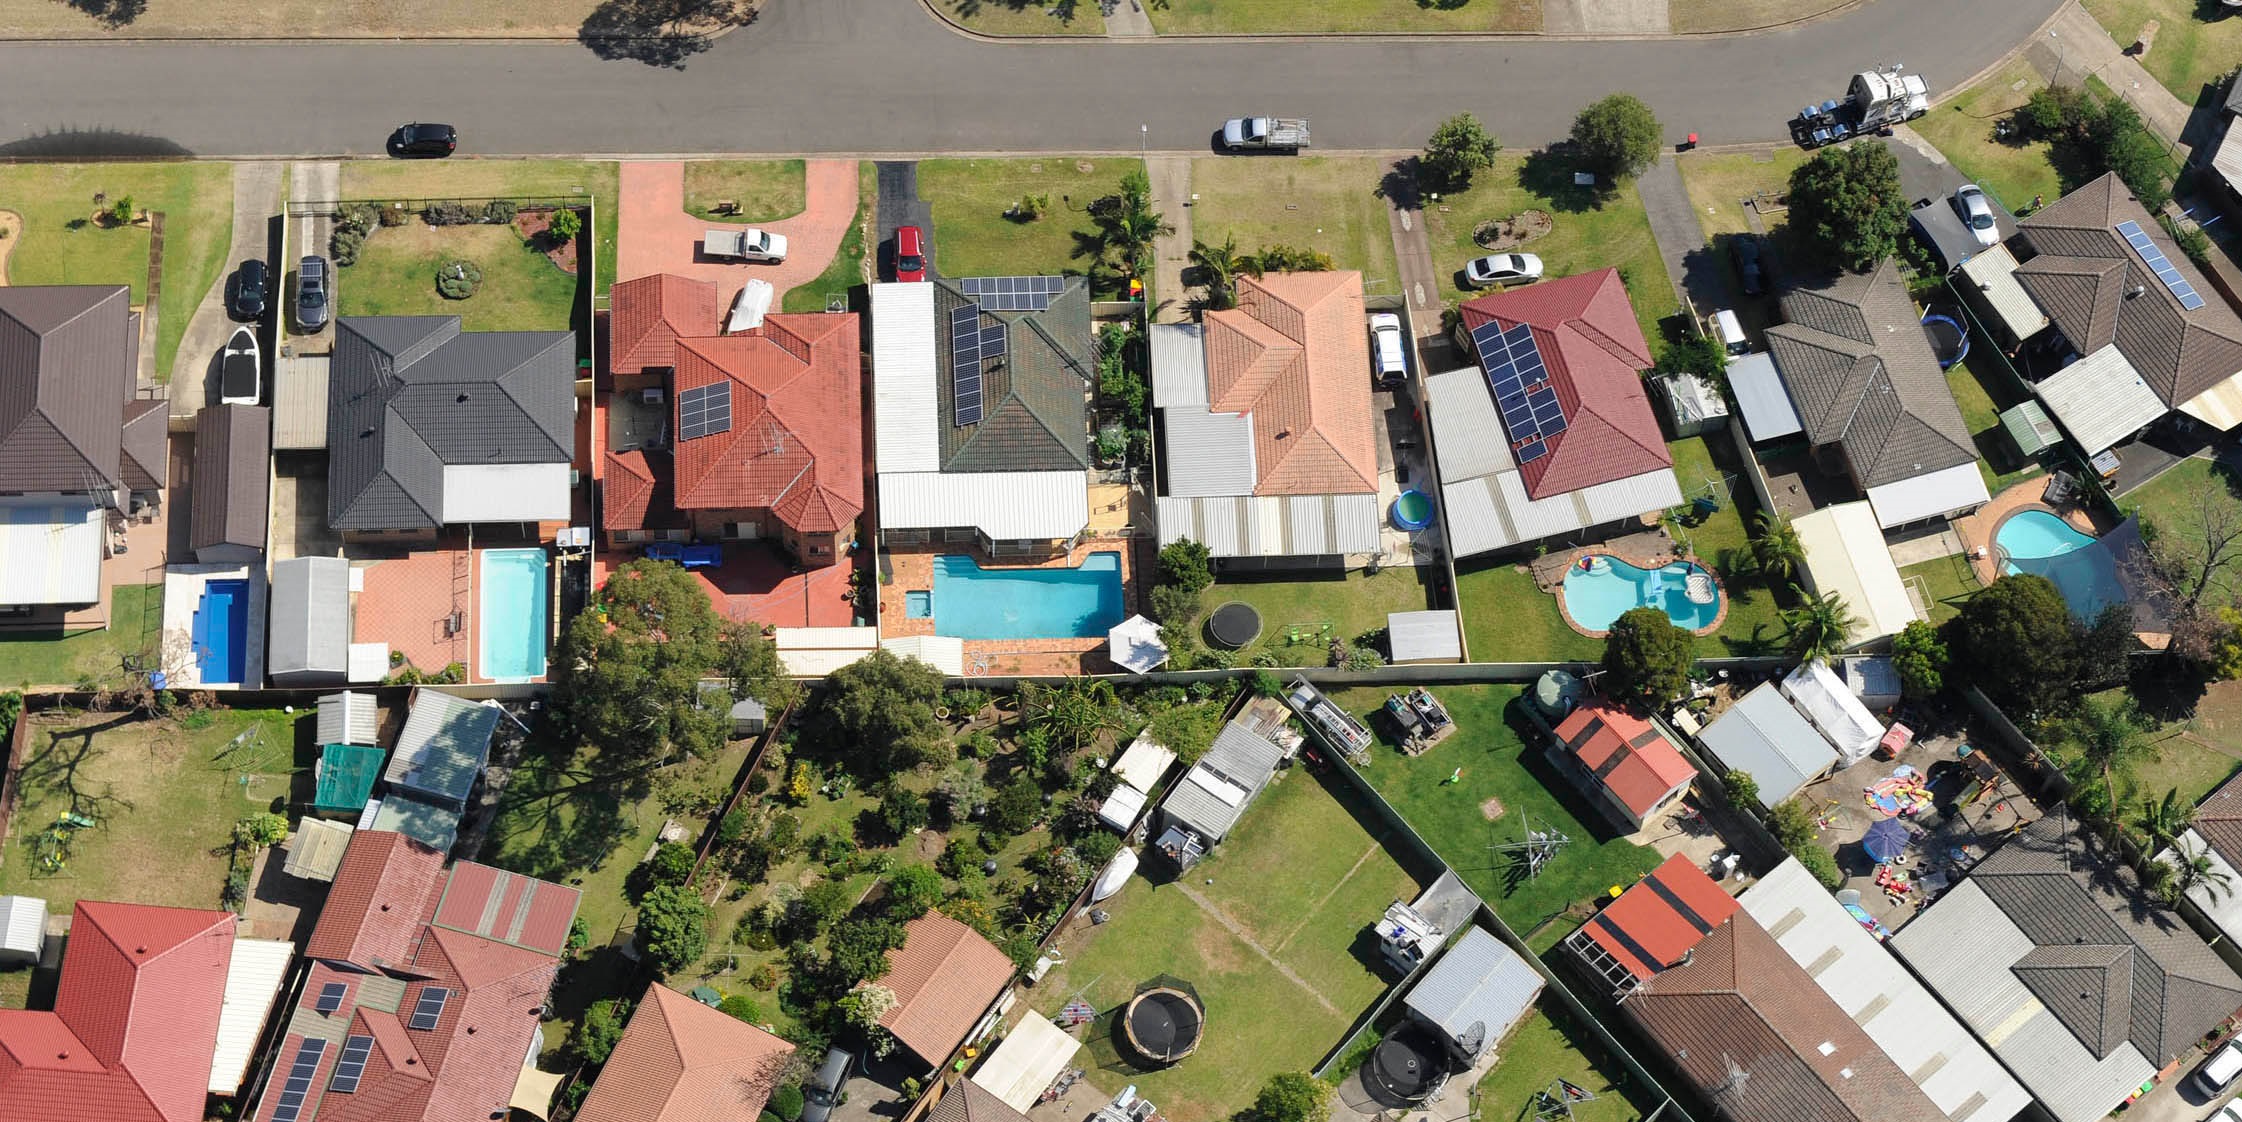 Aerial image of houses in neighborhood 